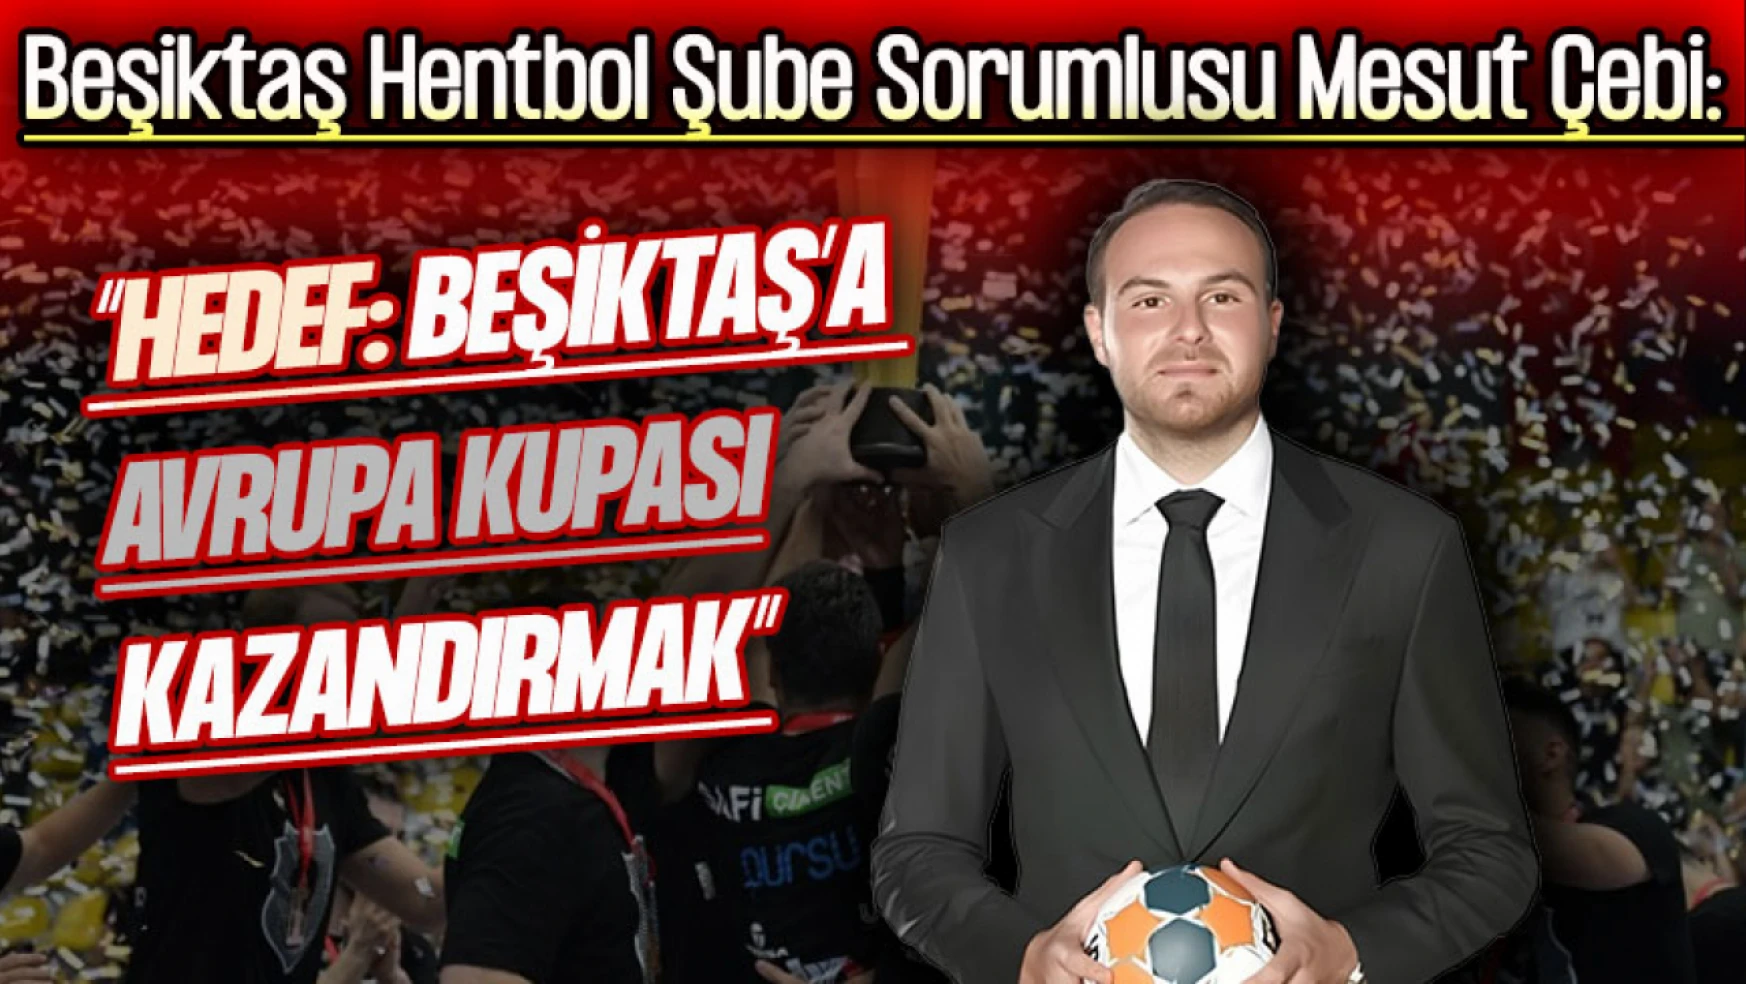 Mesut Çebi: 'Hedef: Beşiktaş'a Avrupa Kupası Kazandırmak'